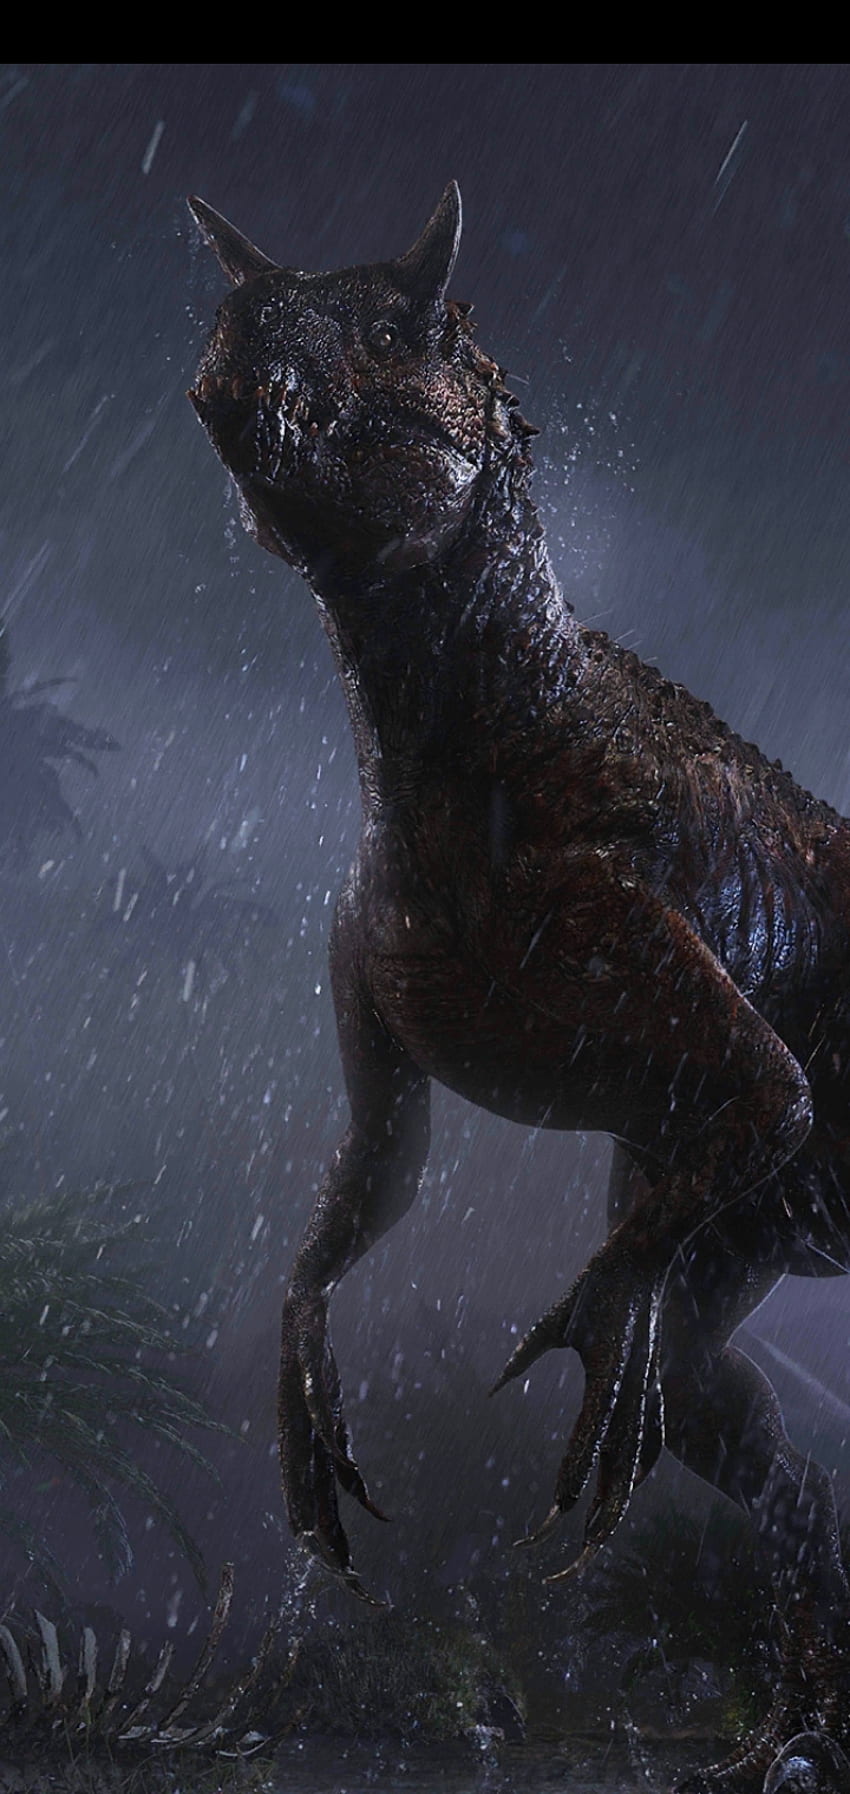 Scorpious Rex, Jurassic Park, wąsy, dinozaury, Jurassic World Tapeta na telefon HD